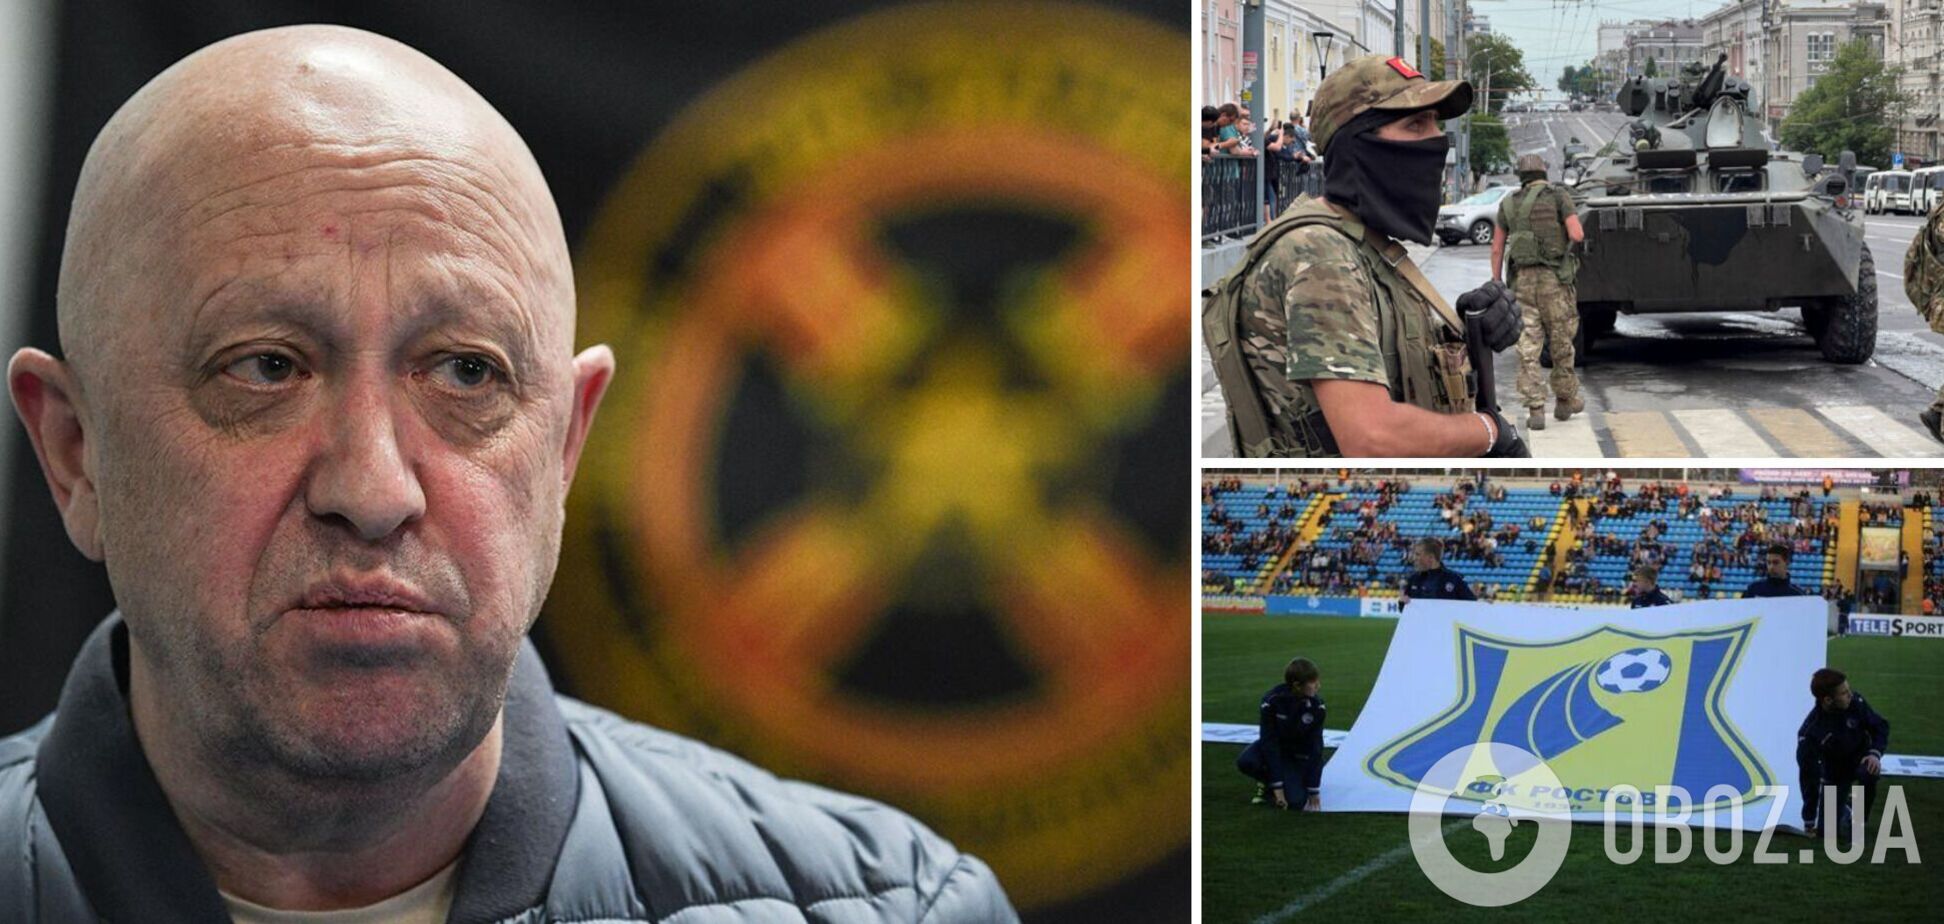 Самый 'украинский' клуб России сделал заявление из-за бунта Пригожина. В сети отреагировали: не страна, а цирк